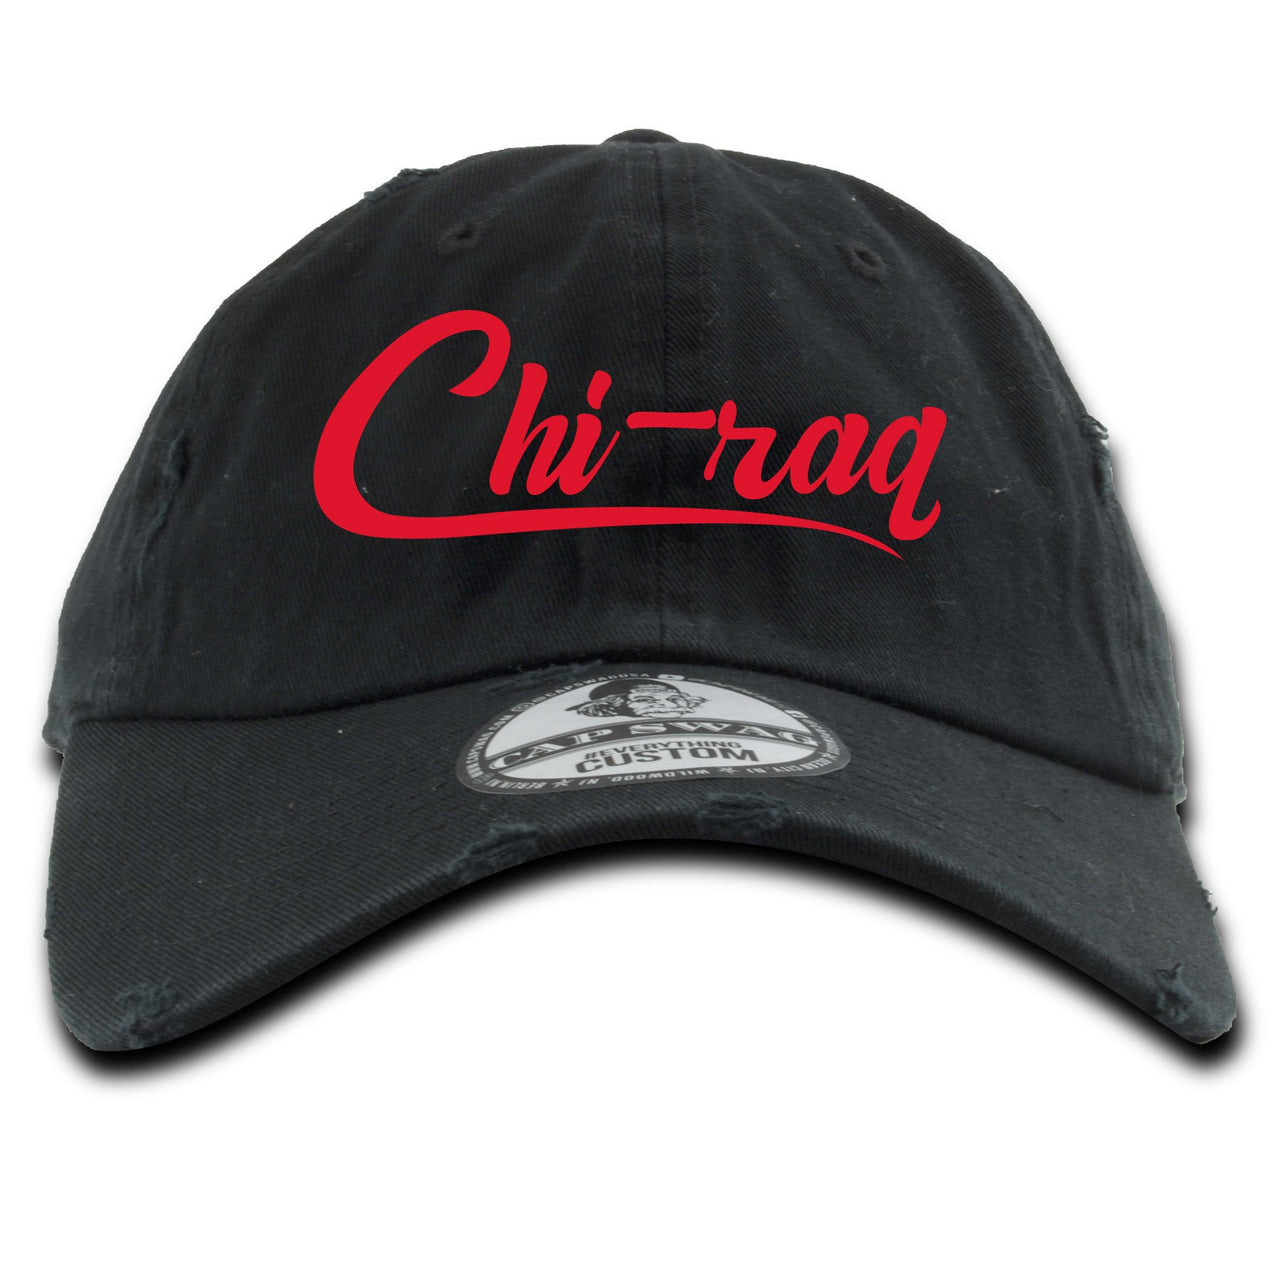 Bred 2019 4s Distressed Dad Hat | Chiraq, Black